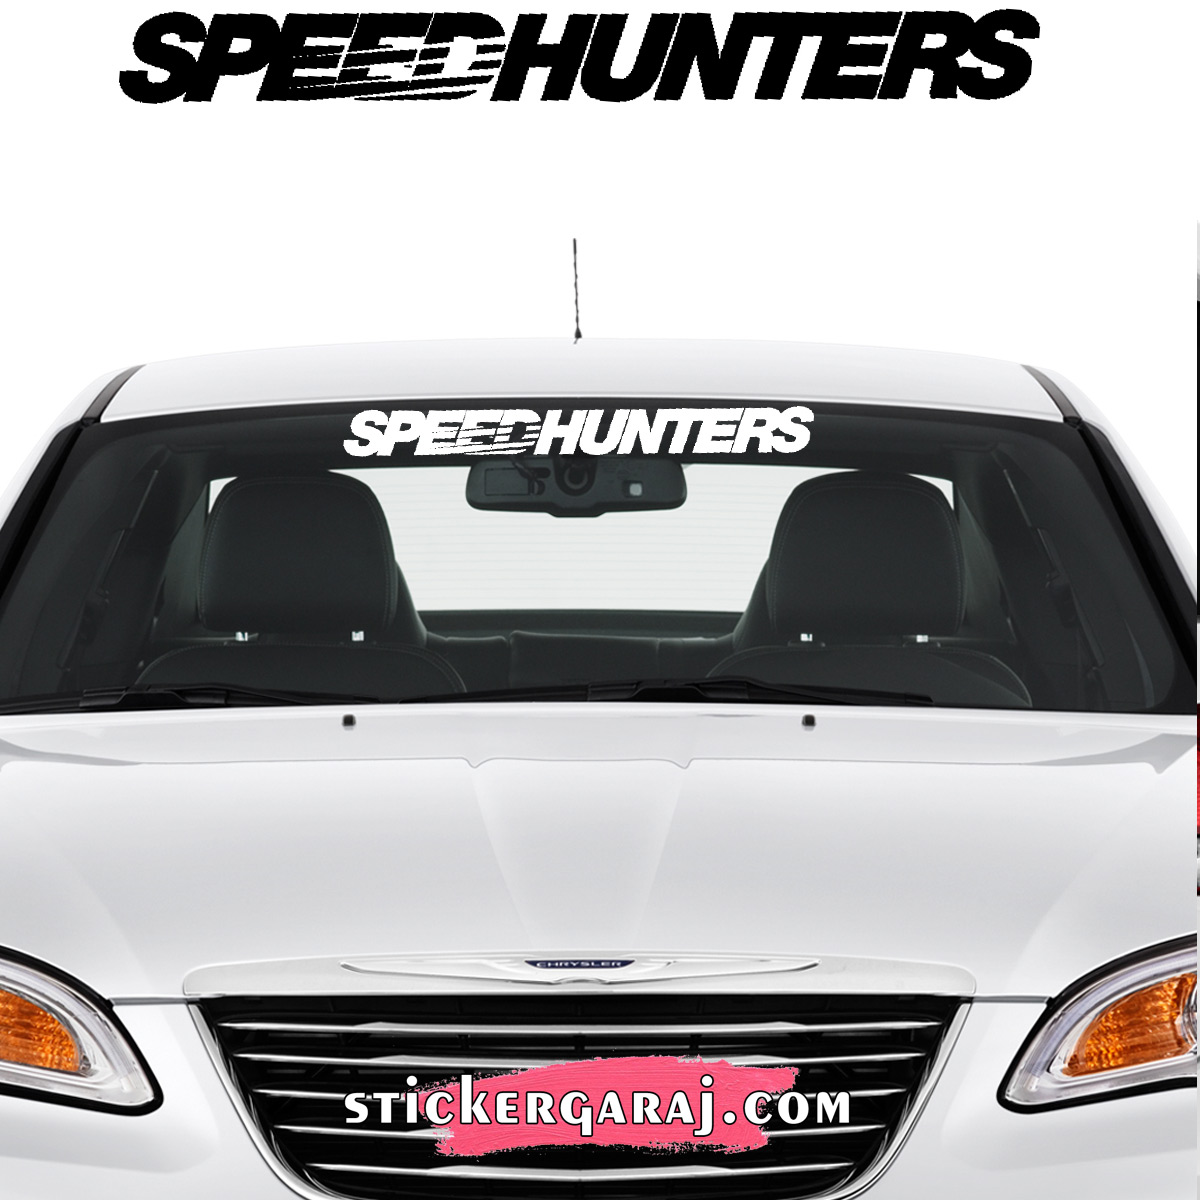 Nissan oto sticker 1 - Nissan cam sticker - speedhunters